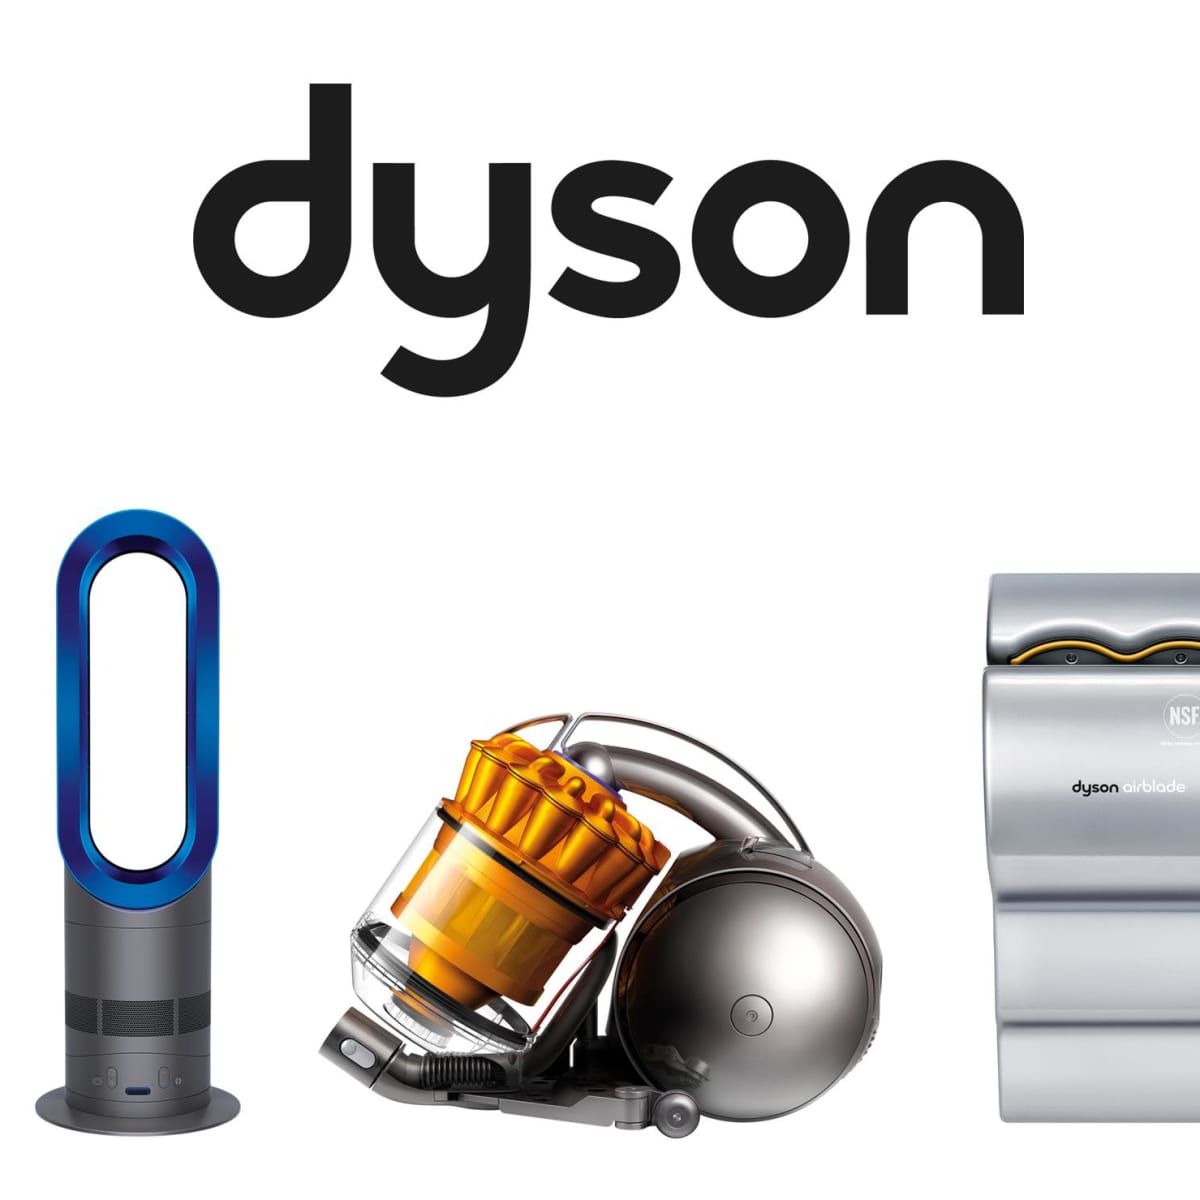 Официальные интернет магазины дайсон. Dyson. Дайсон бренд. Дайсон логотип. Пылесос Dyson логотип.